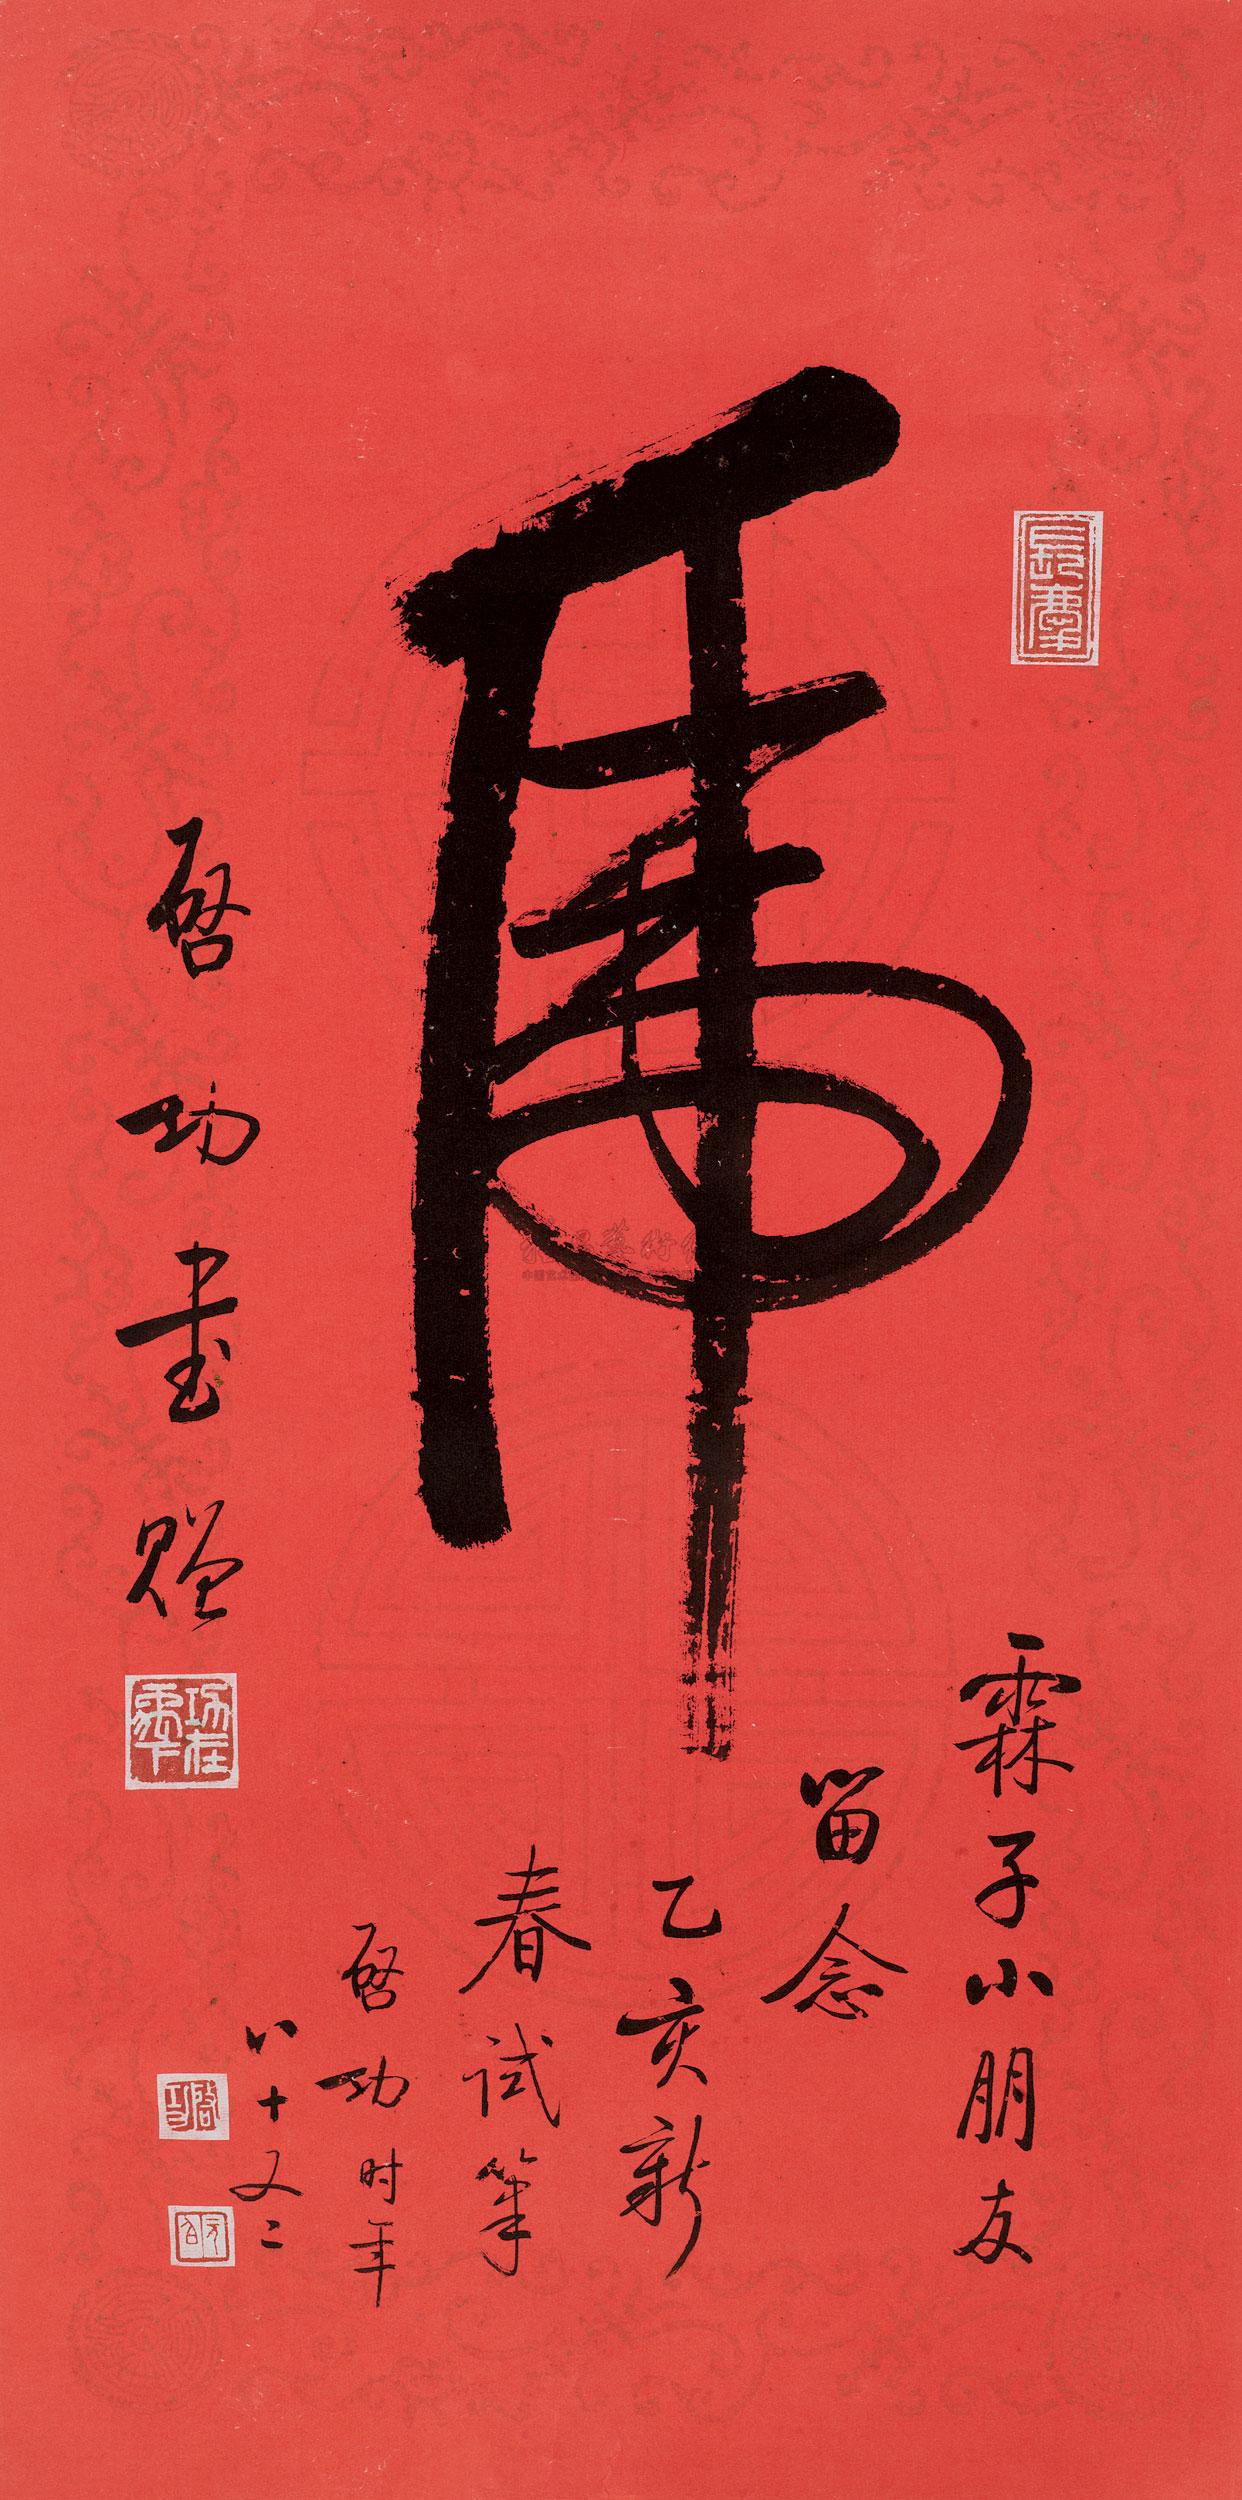 1995年作 草书虎 镜心作者启功拍品分类中国书画